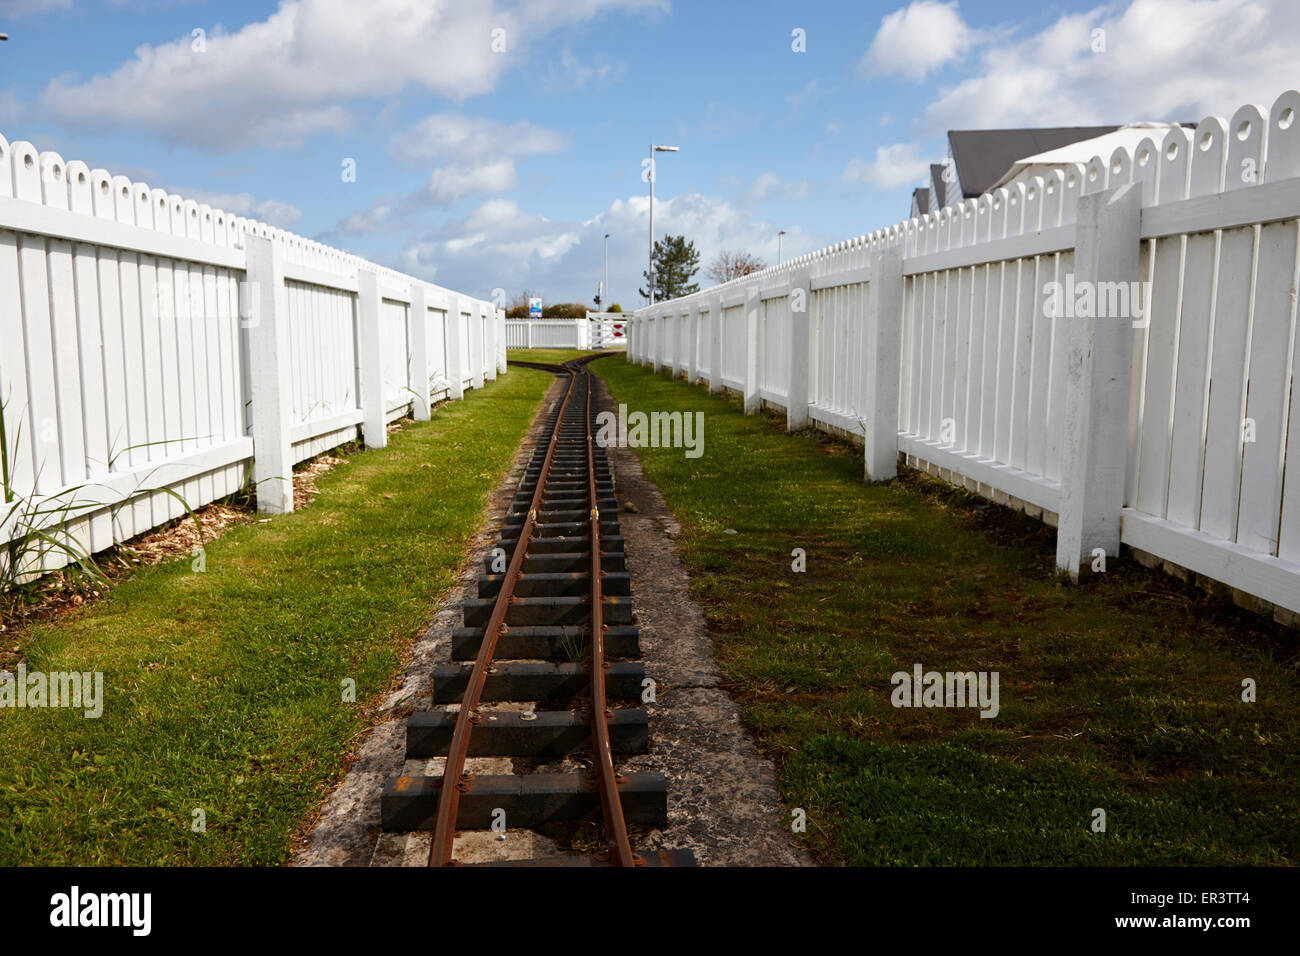 narrow gauge railway track in outdoor park in the uk Stock Photo